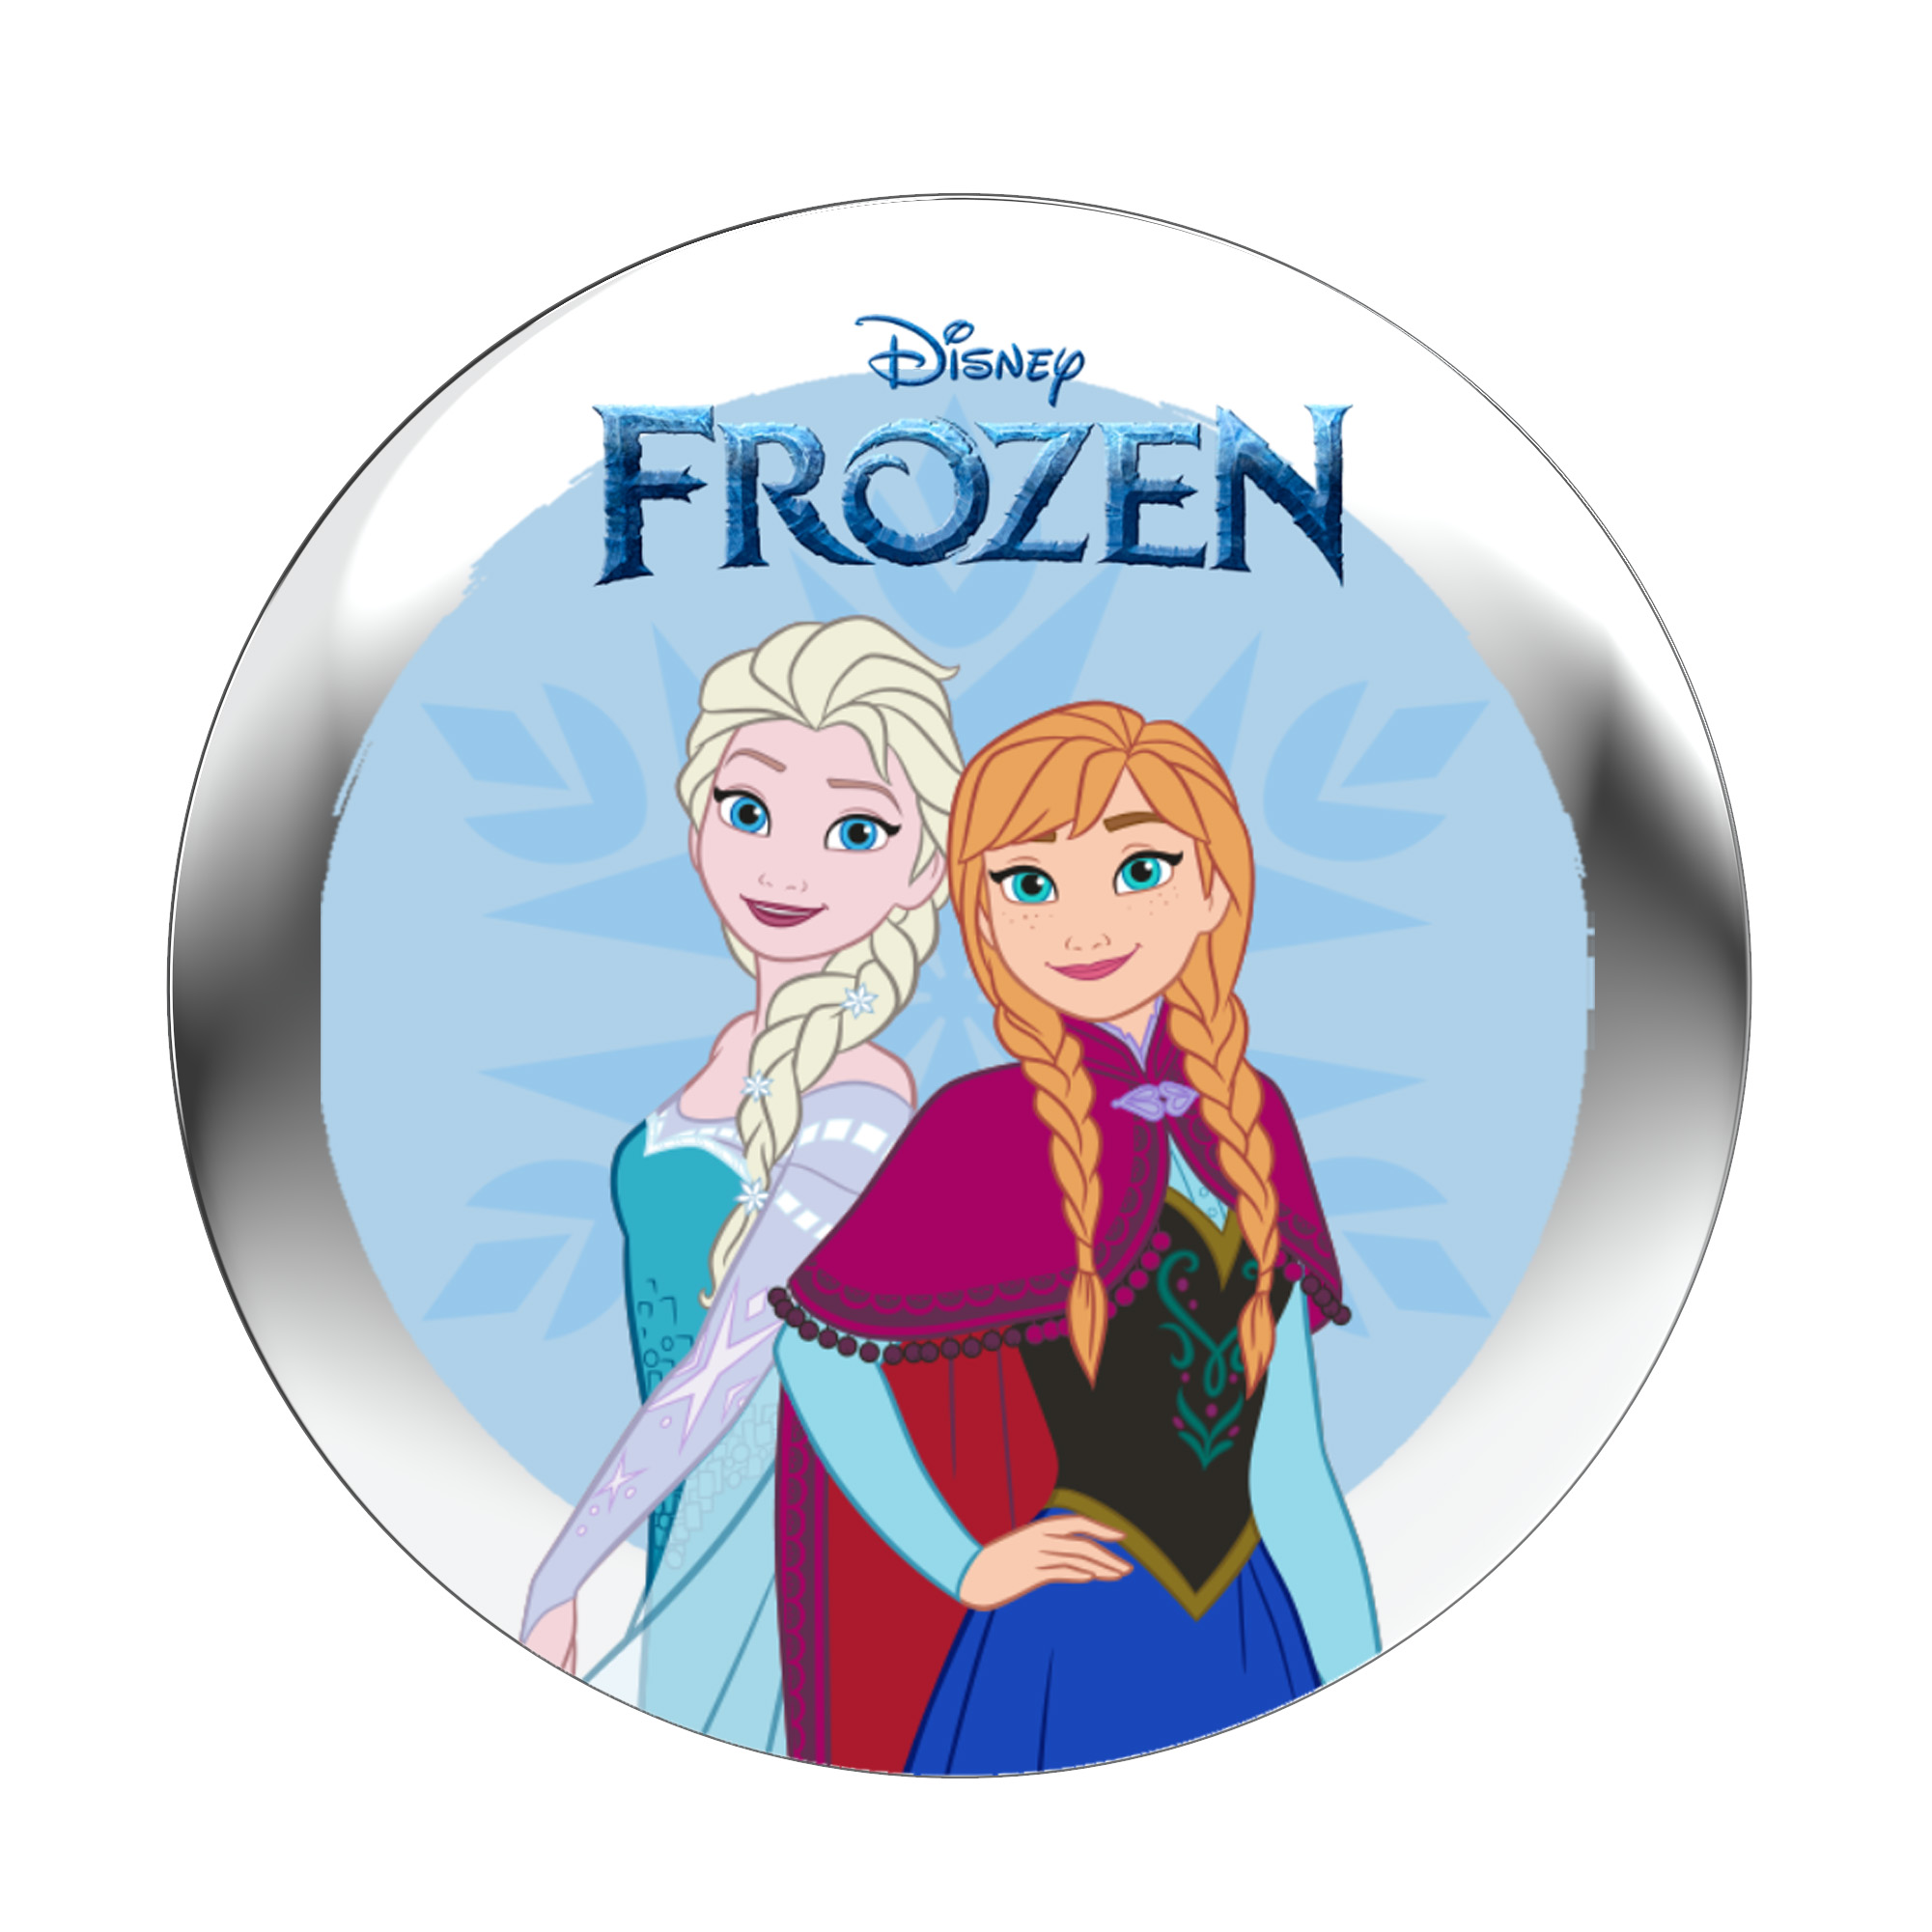 Track) Audiogeschichte StoryPhones \'Frozen\' - Audio - - Disney für StoryShield - (Download